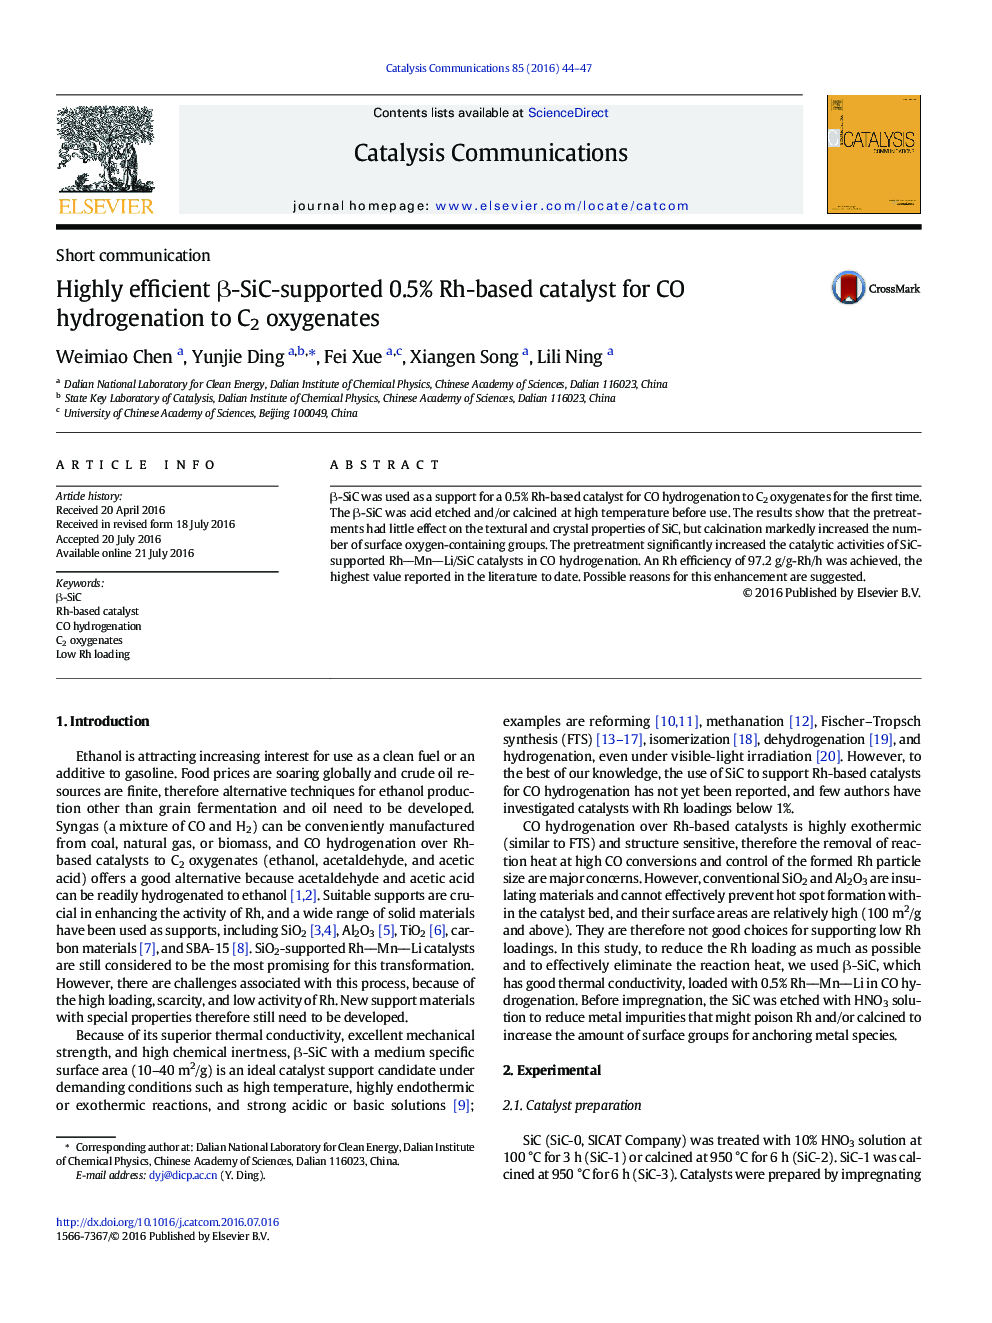 کاتالیزور های مبتنی بر Rh .5٪ با پشتیبانی β-SiC بسیار کارآمد برای هیدروژناسیون CO به اکسیژن C2